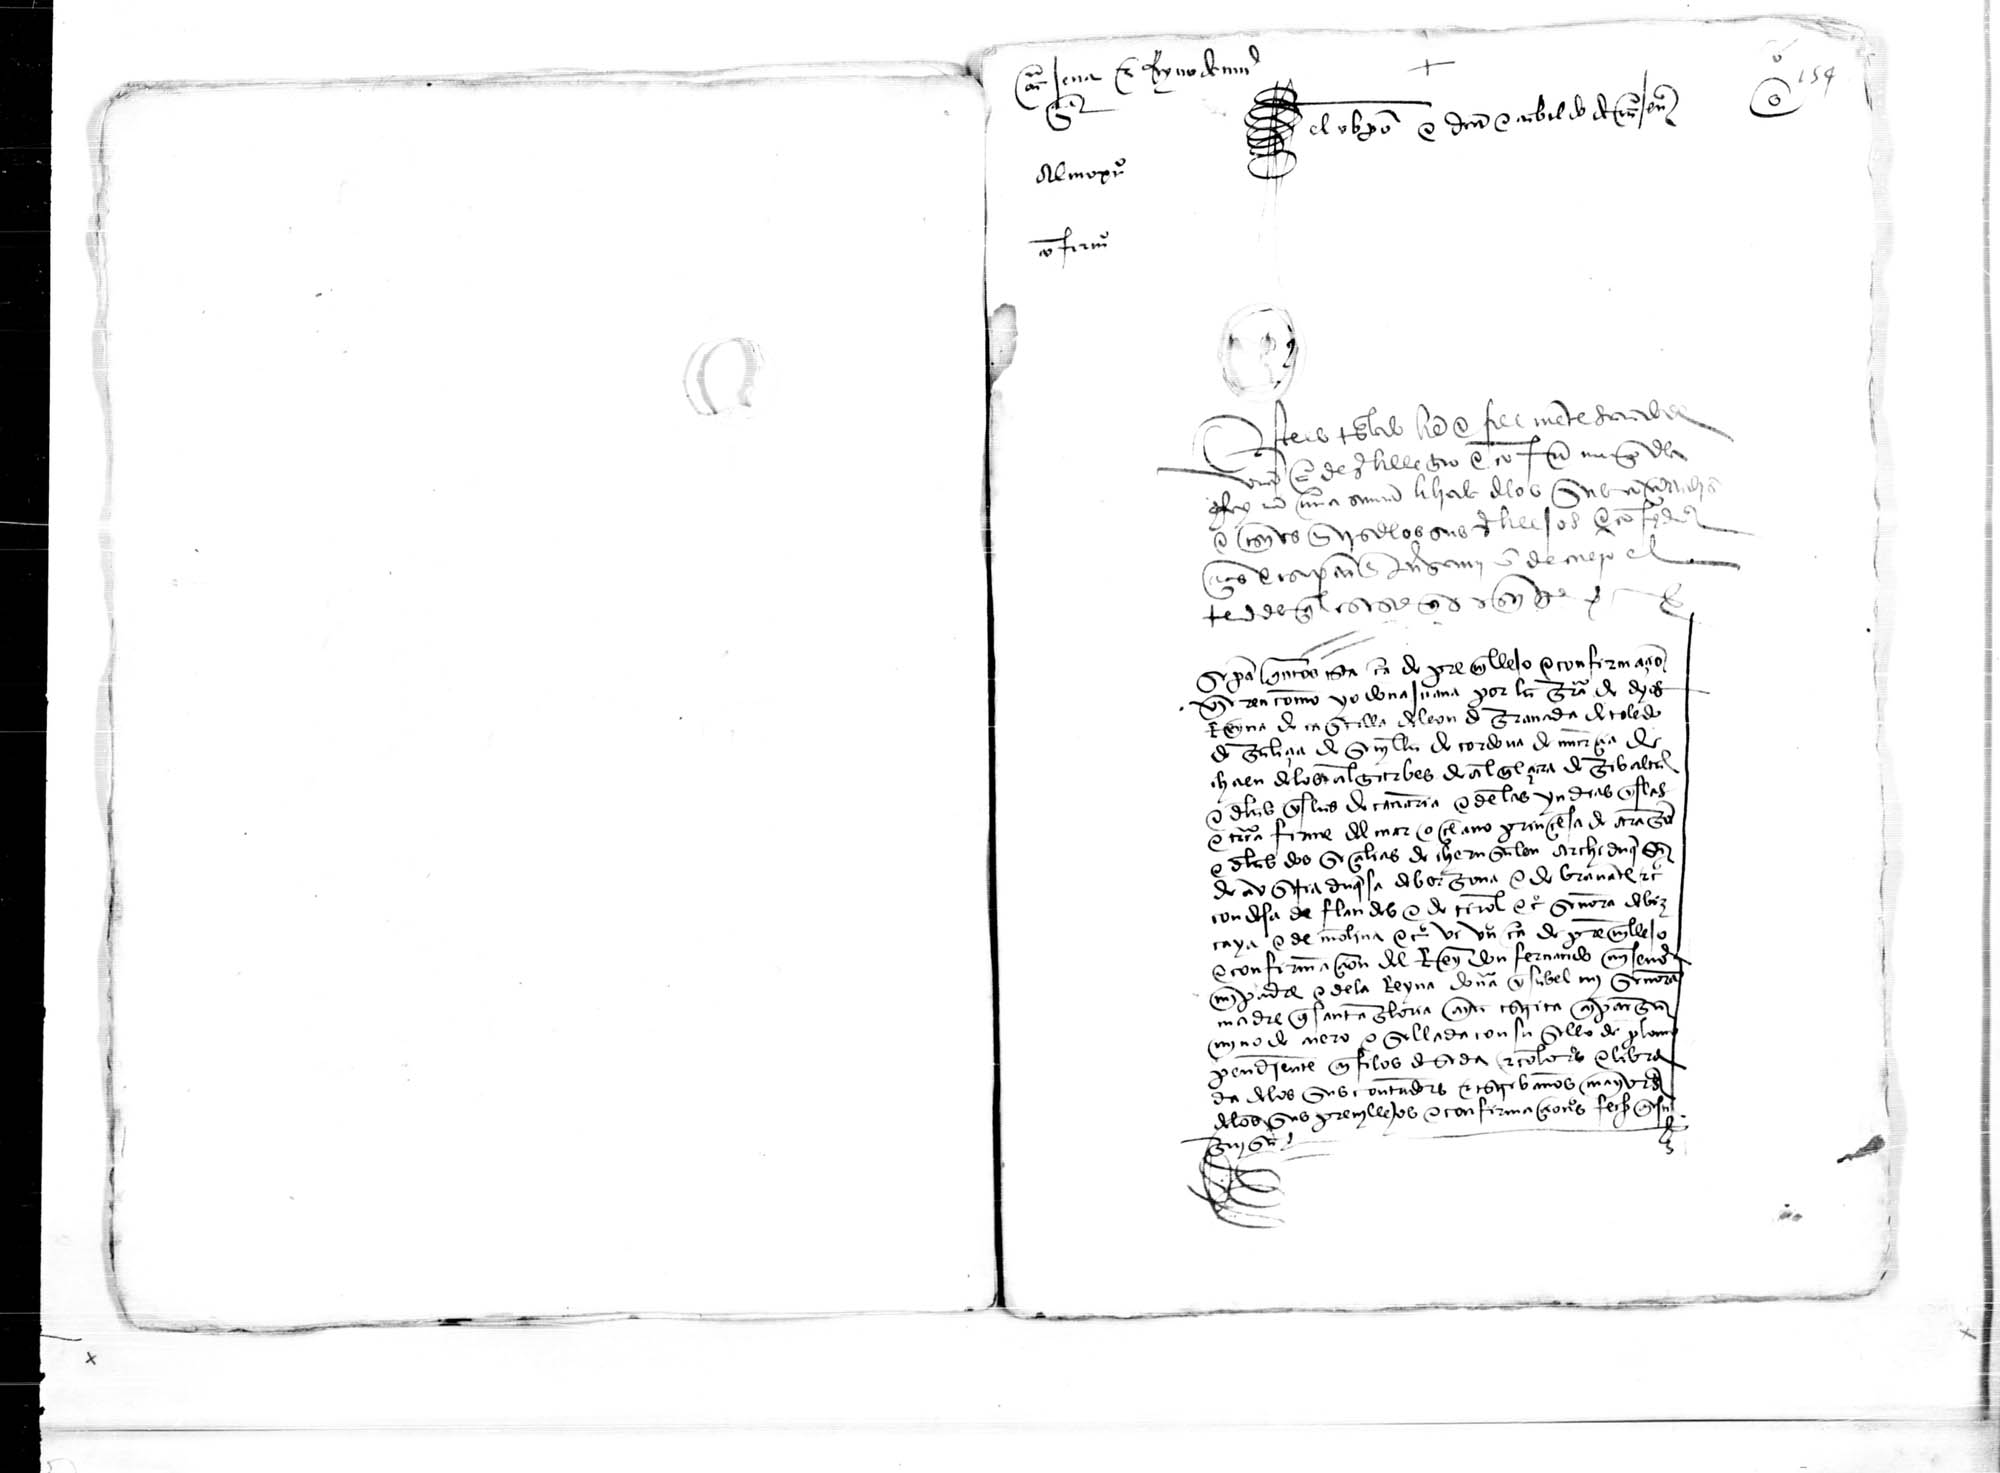 Carta de la reina Juana  confirmando el privilegio del diezmo del almojarifazgo del Obispado de Cartagena y Reino de Murcia a favor del obispo, deán y cabildo de esa Iglesia.